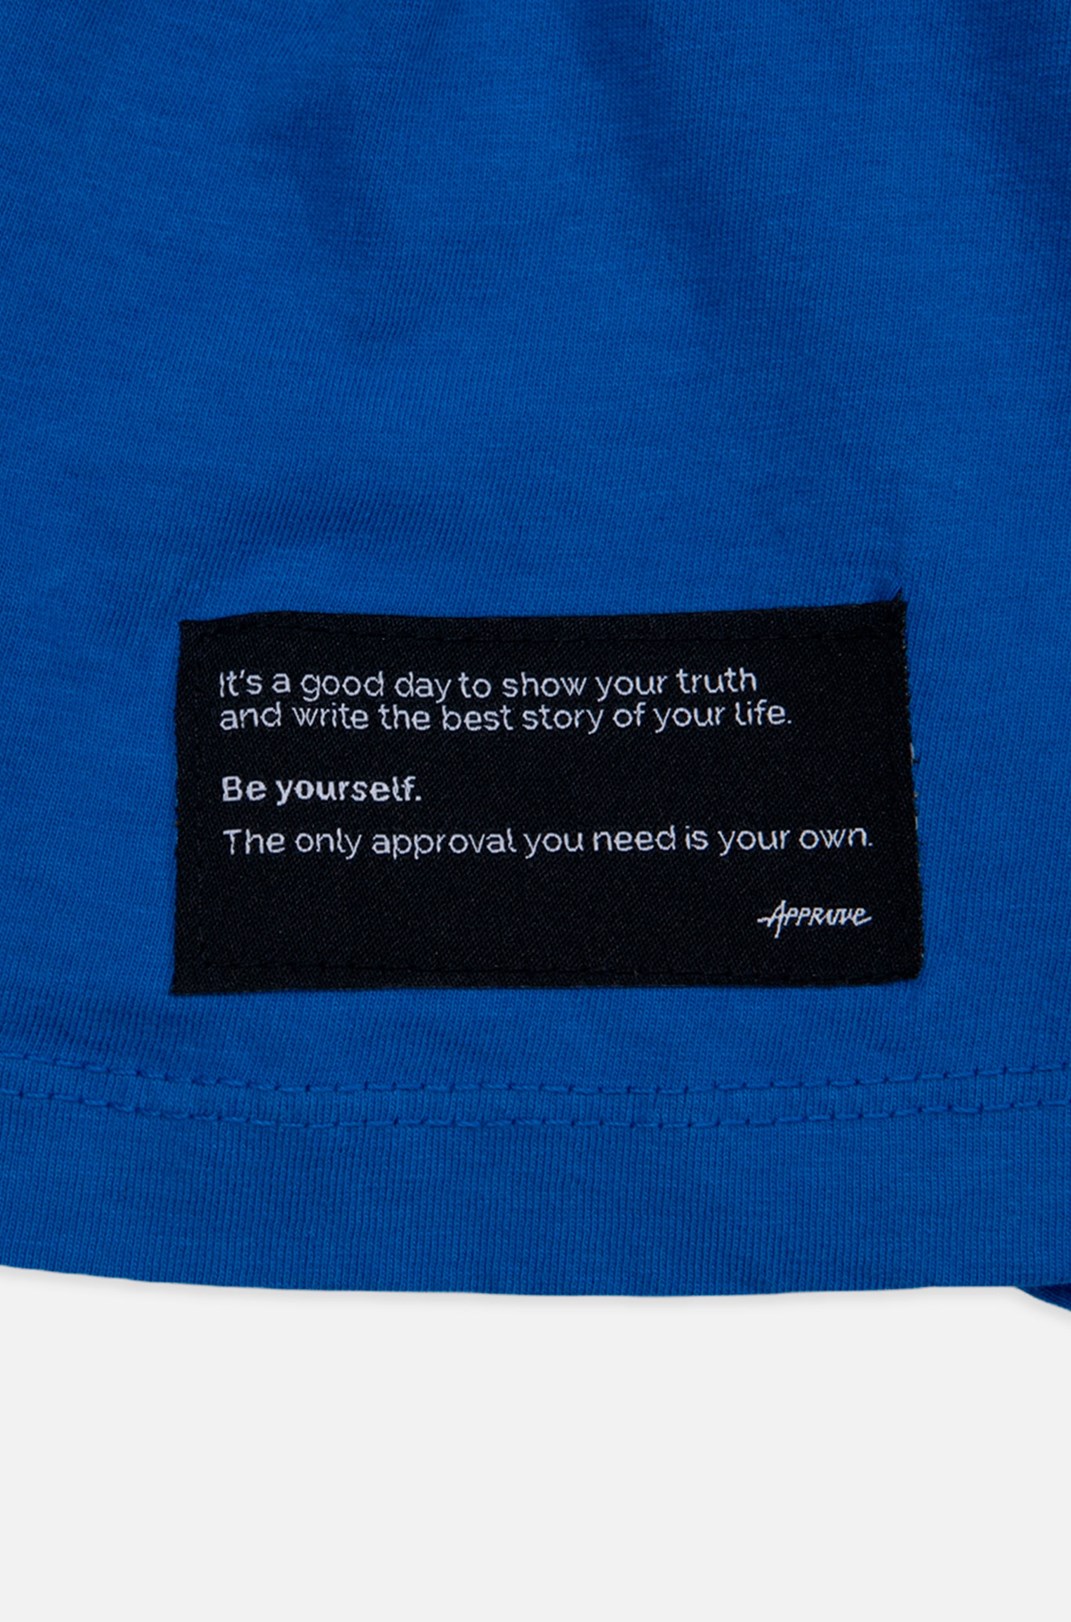 Camiseta Tradicional Approve Yourself Azul E Branca